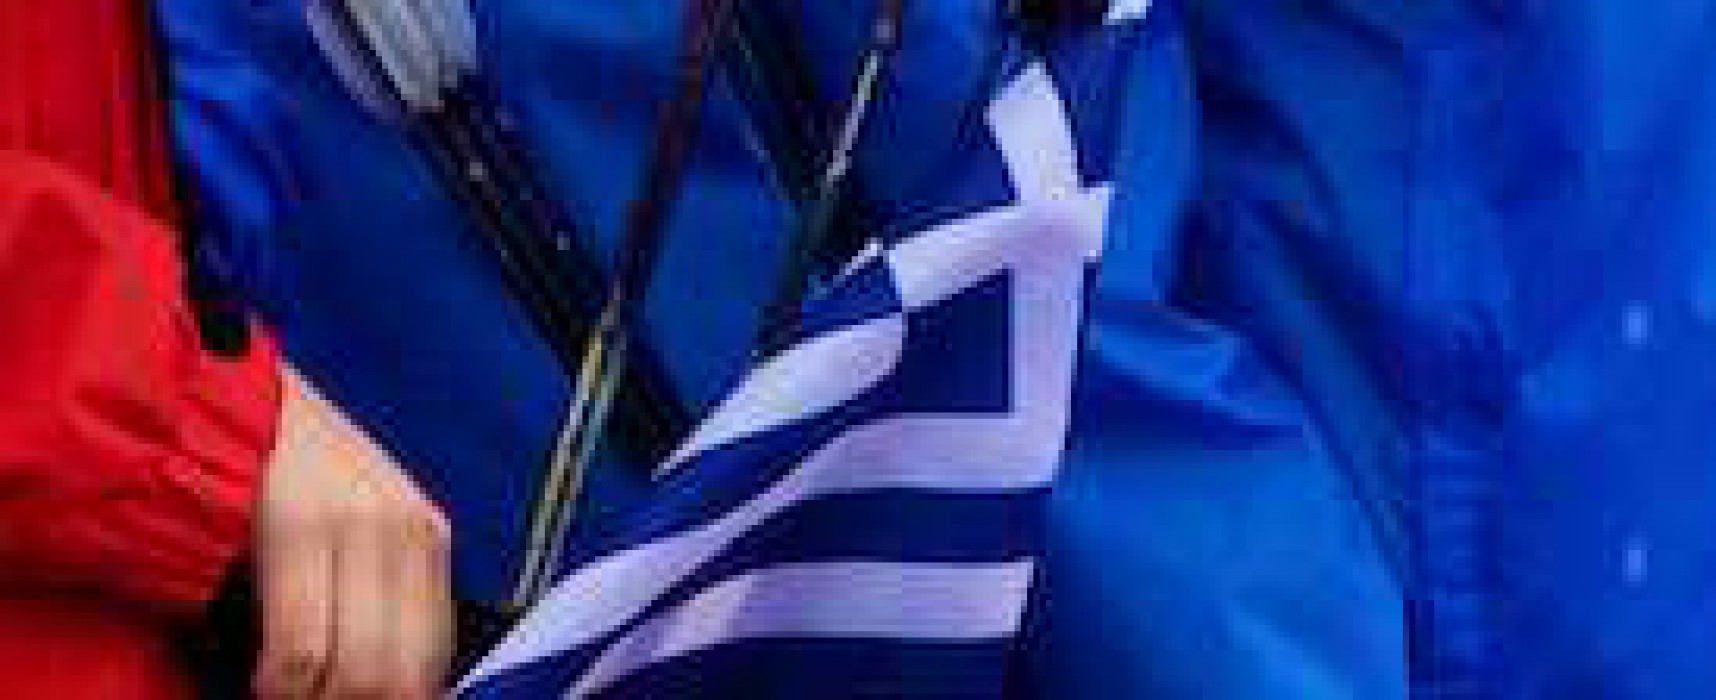 Σύνθεση Ε.Ο. για αγώνα Διακρατικής συμφωνίας Ελλάδας – Κύπρου, 2016